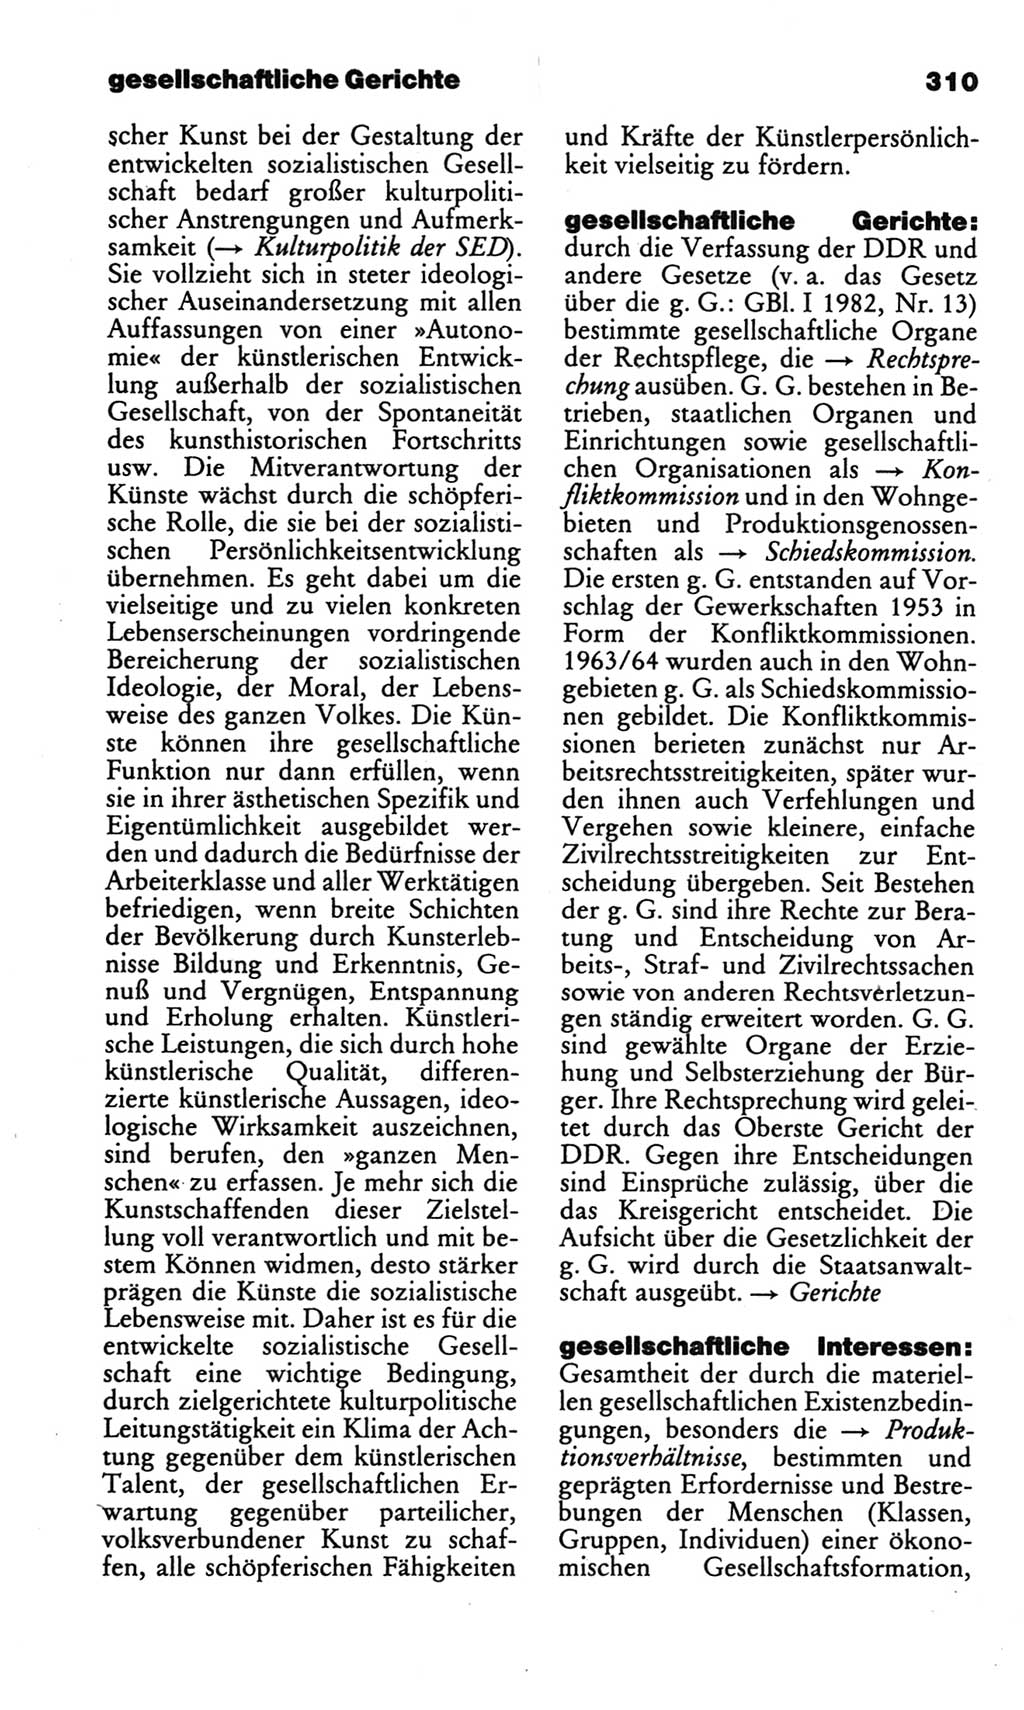 Kleines politisches Wörterbuch [Deutsche Demokratische Republik (DDR)] 1986, Seite 310 (Kl. pol. Wb. DDR 1986, S. 310)